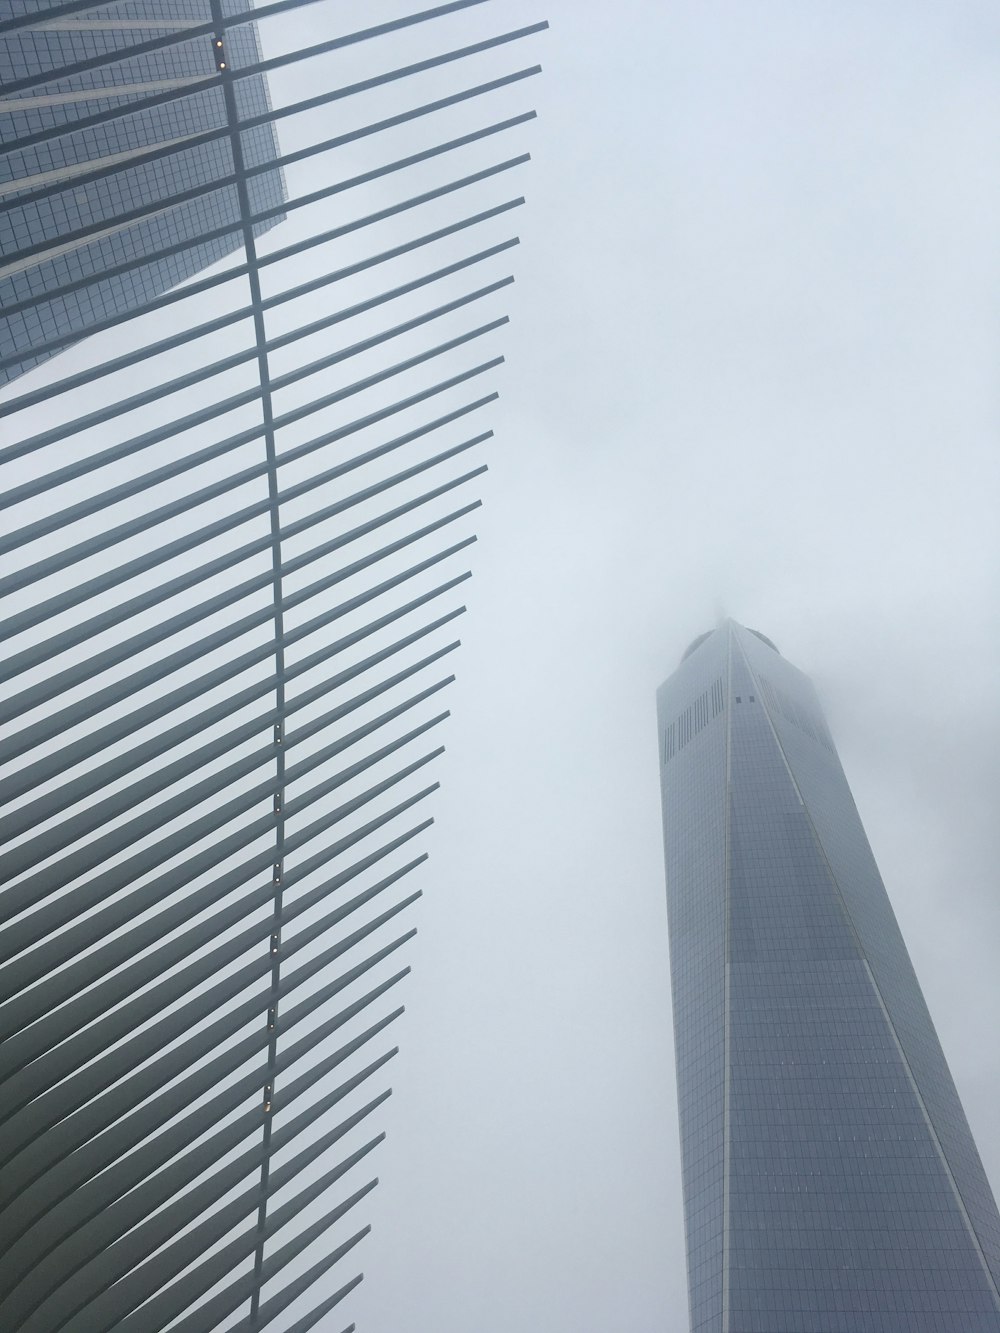 Um World Trade Center